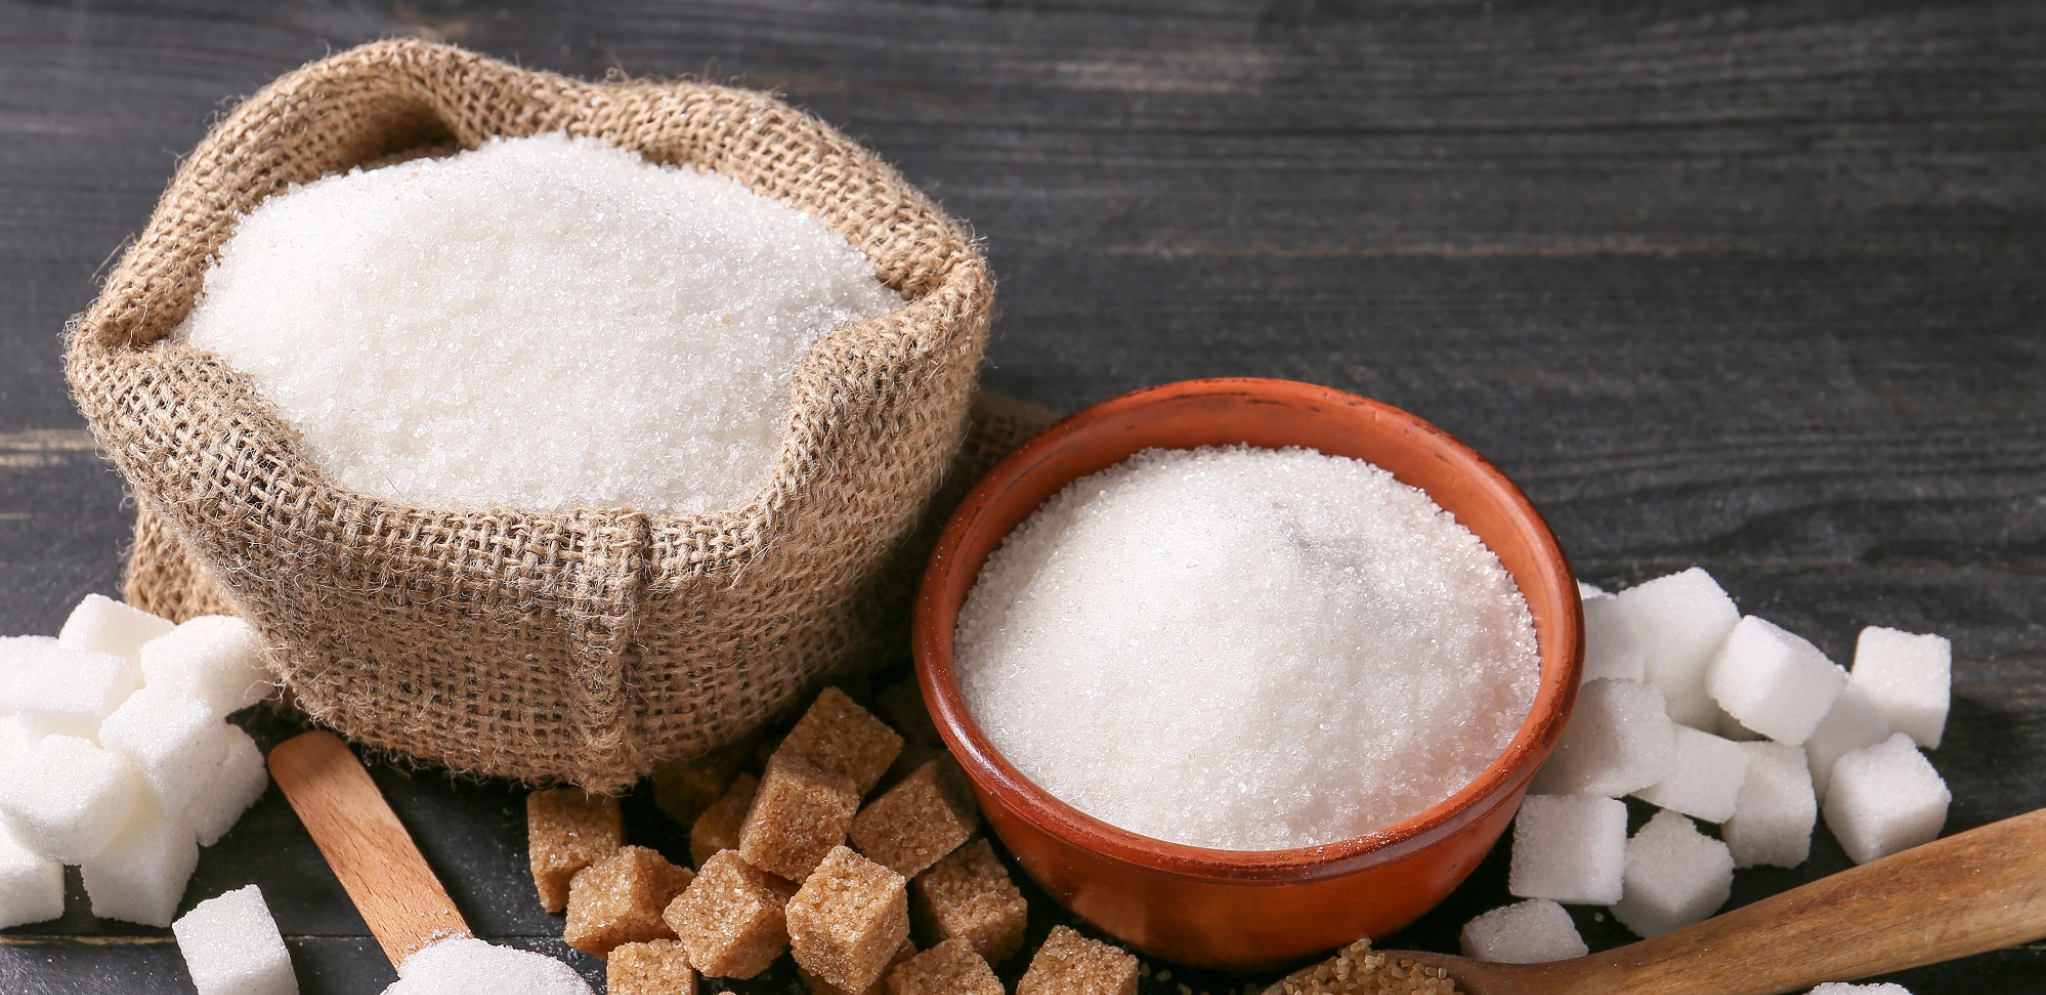 Ekskluzivno Alo! otkrio špekulanta iz Valjeva koji je izazvao poremećaj na domaćem tržištu: Pohlepni King-komerc sakrio 30.000 tona šećera